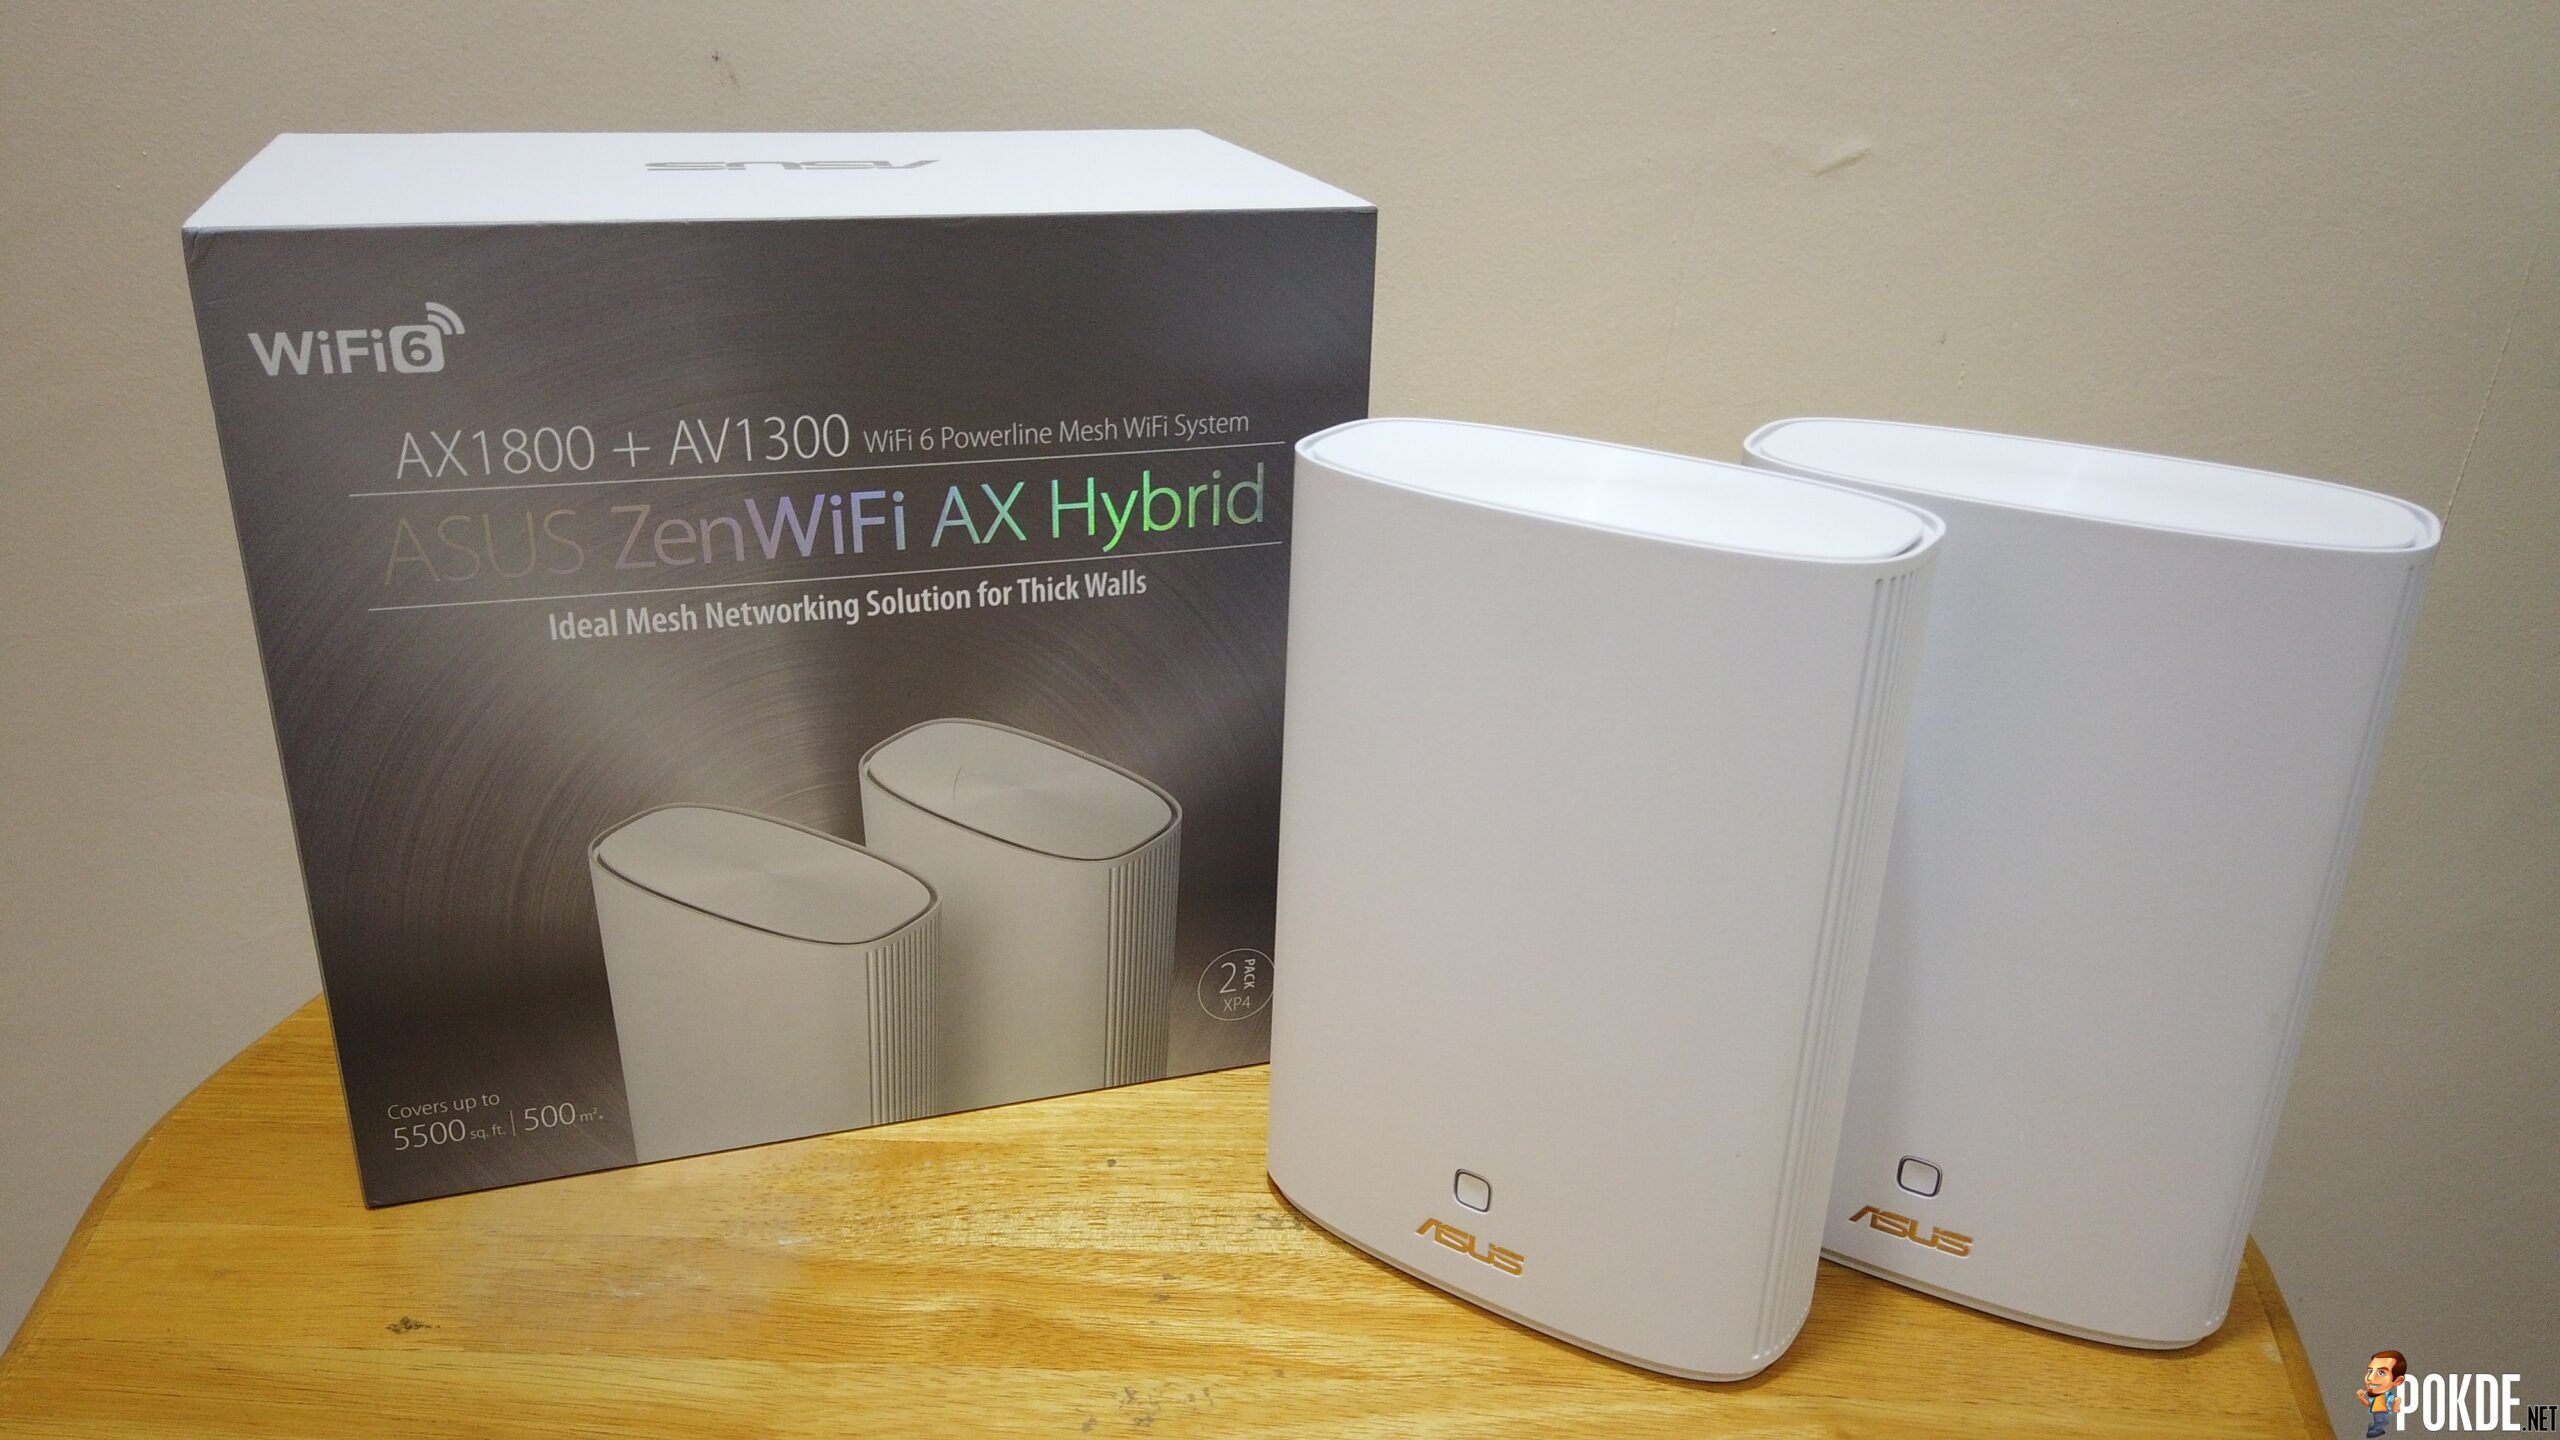 ASUS ZenWiFi AX Hybrid (XP4) Mesh Review - 5,500 sqft Wi-Fi Coverage 20